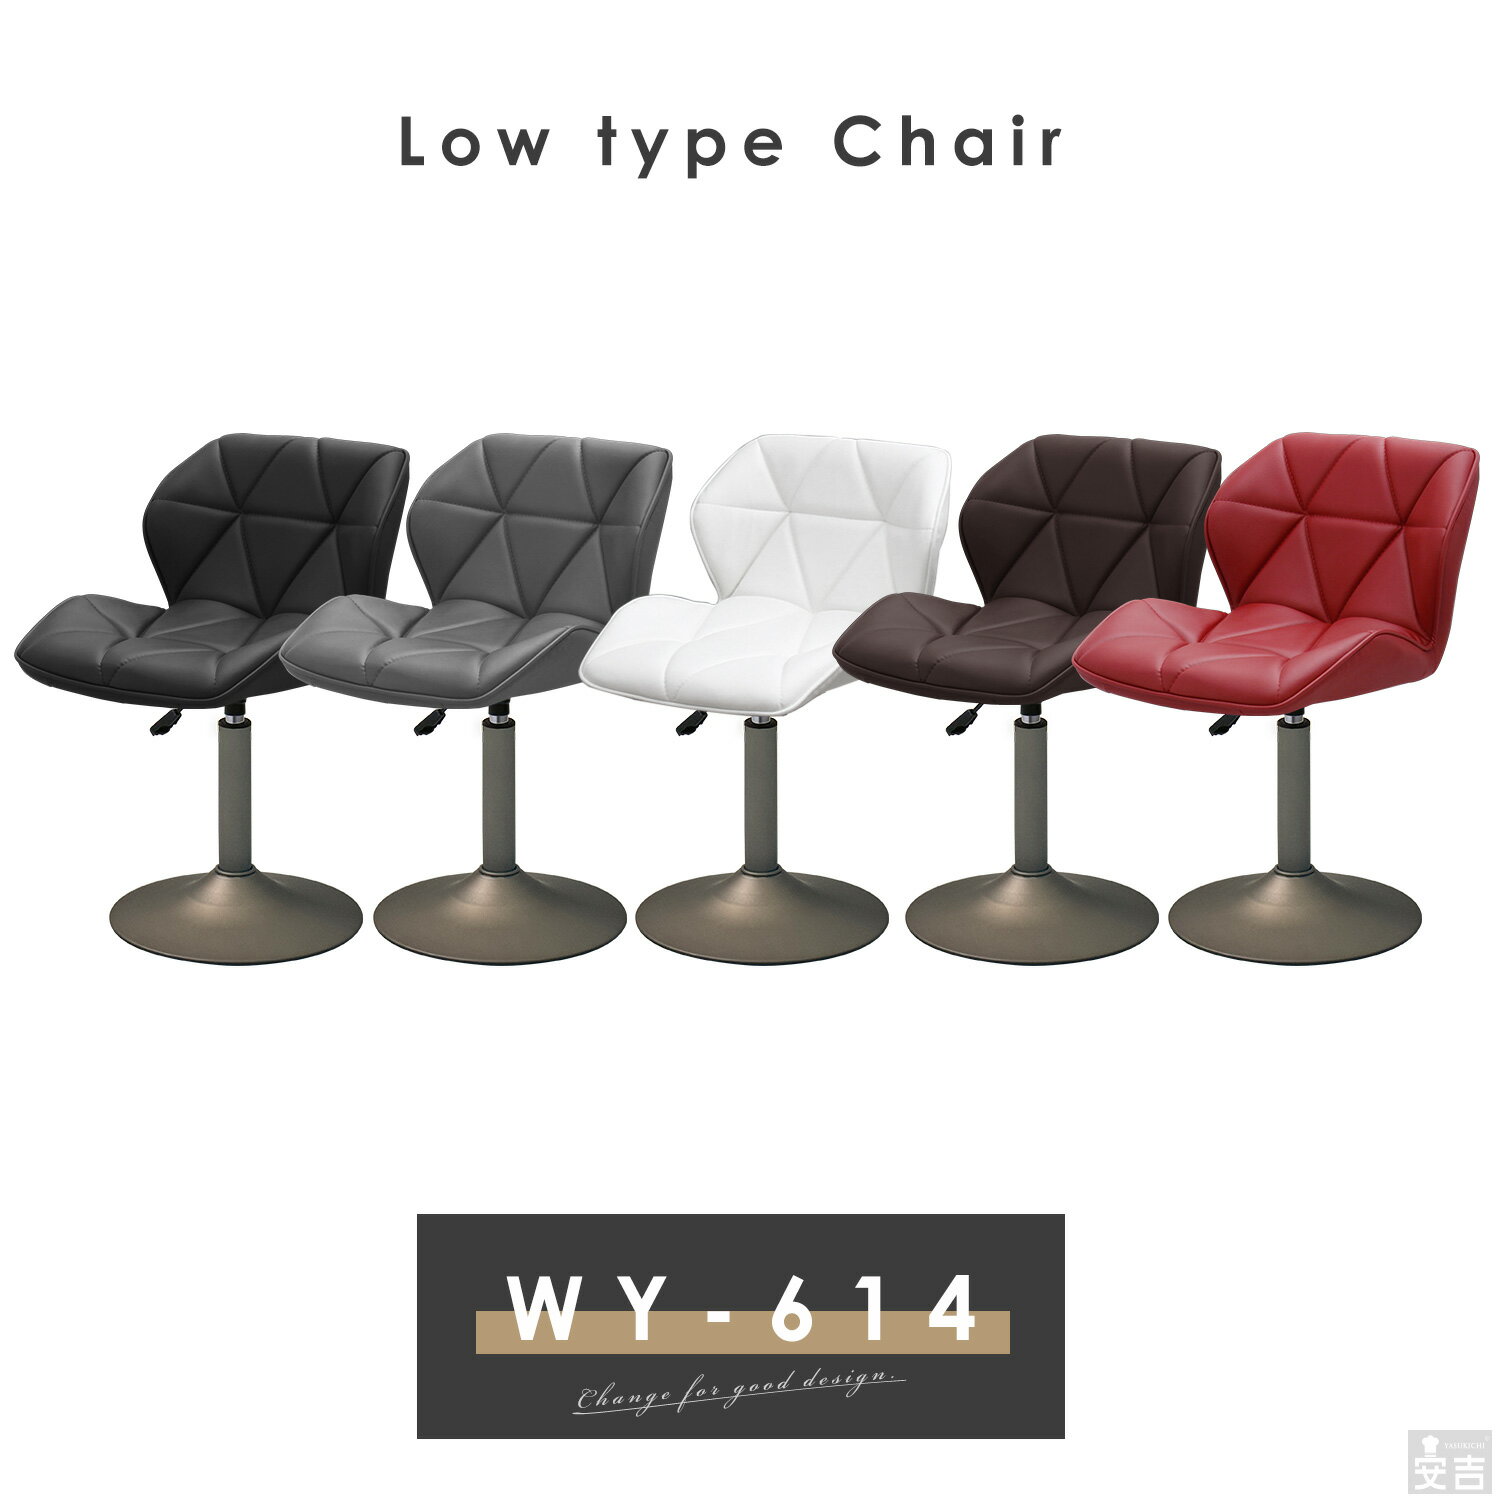 カウンターチェア ロータイプ WY-614S セピアブロンズ脚タイプ【低め】【椅子】【バーチェア】【背もたれ付き】【回転】【昇降式】【ローチェア】【低いカウンターチェアー】【低い椅子】【ロータイプ】【回転チェアー】